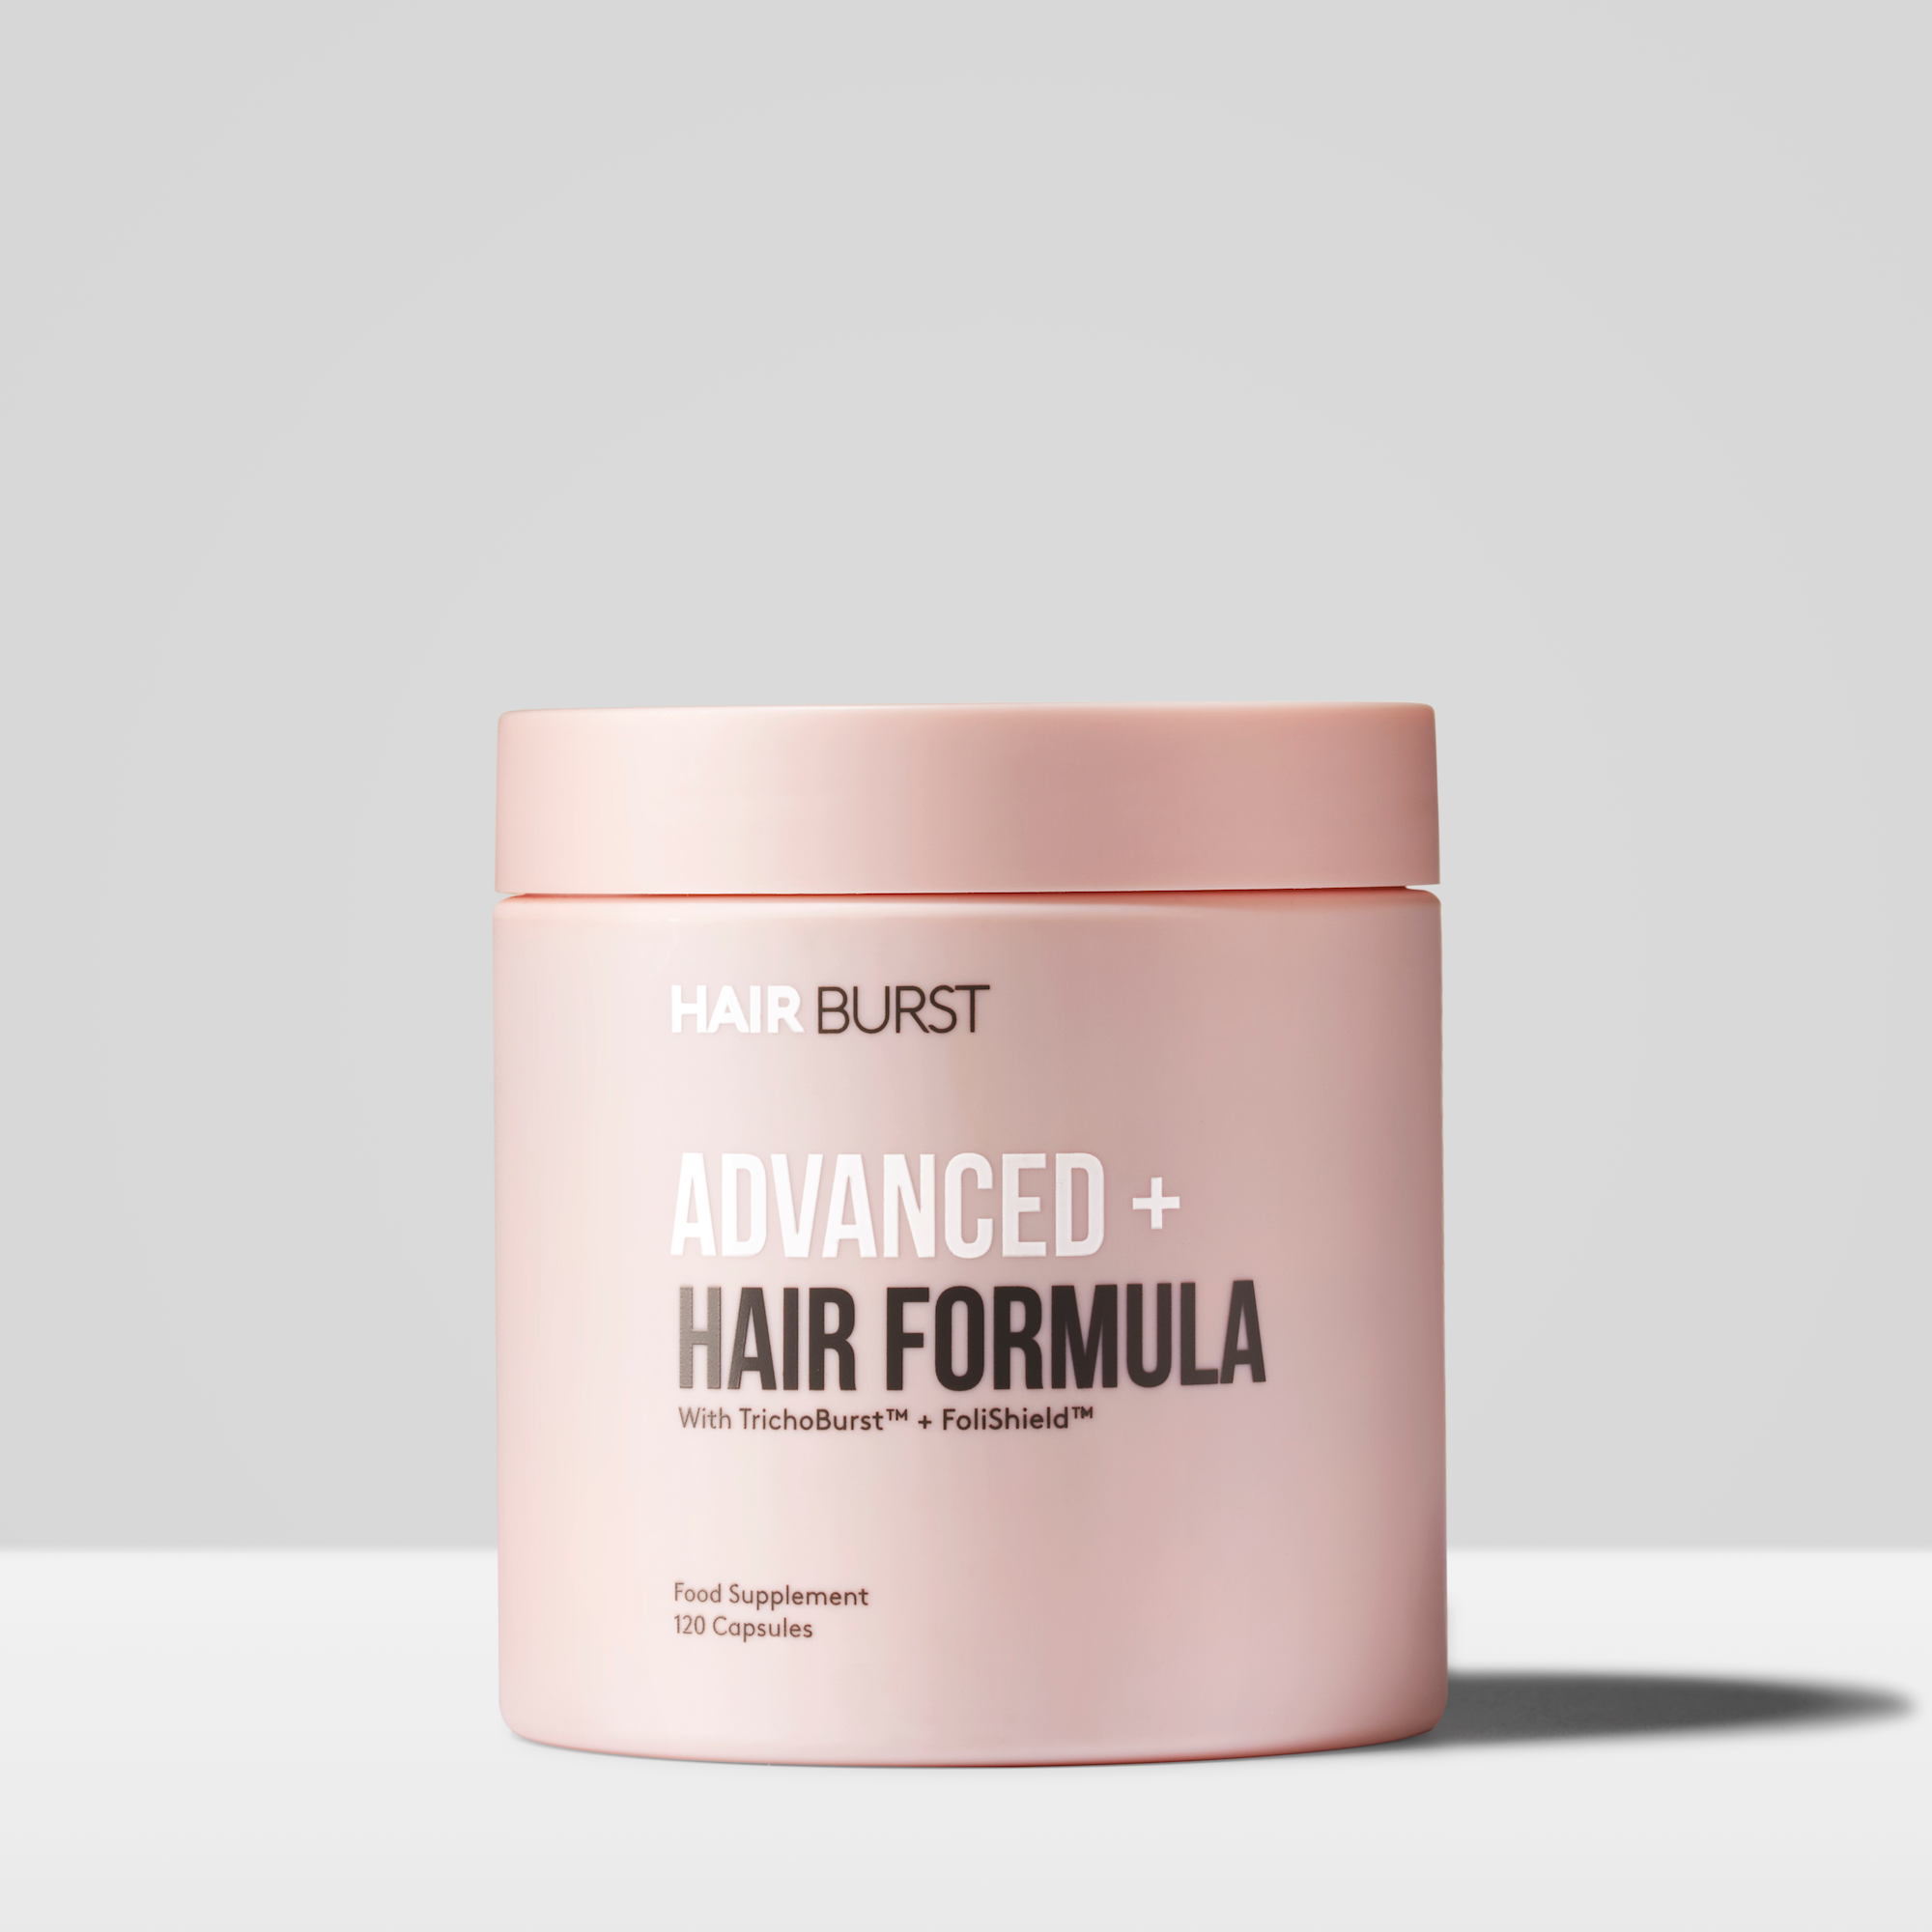 Advanced+ Hair Formula